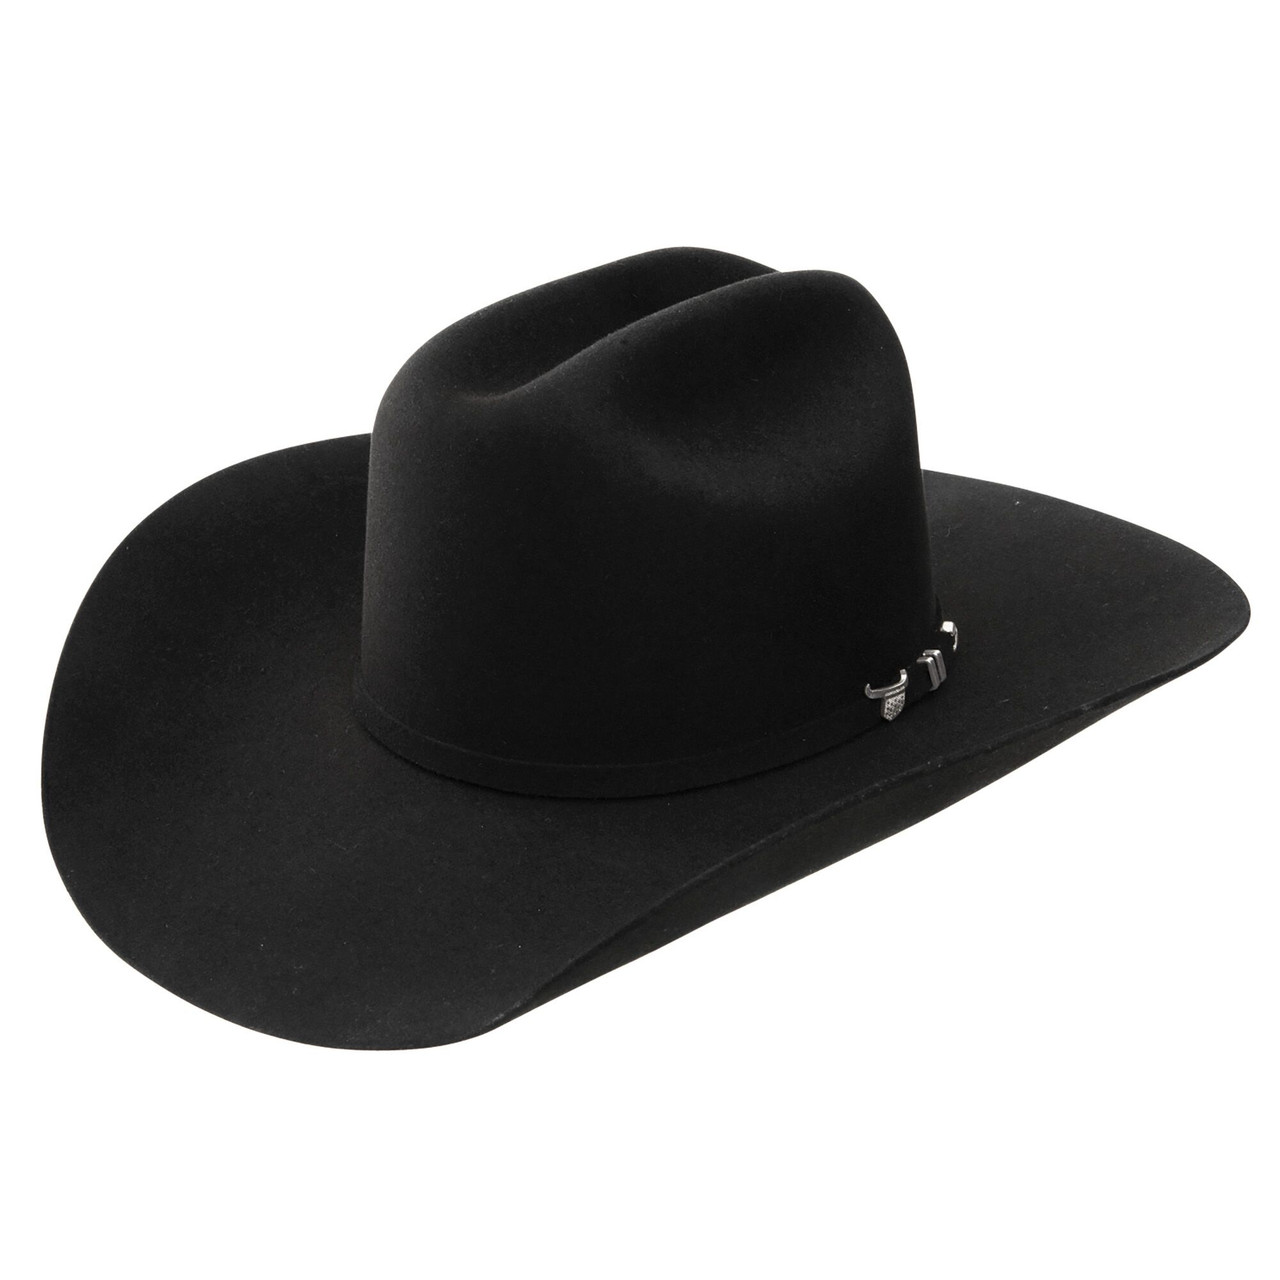 Resistol Felt Hats - USTRC - Black - Billy's Western Wear